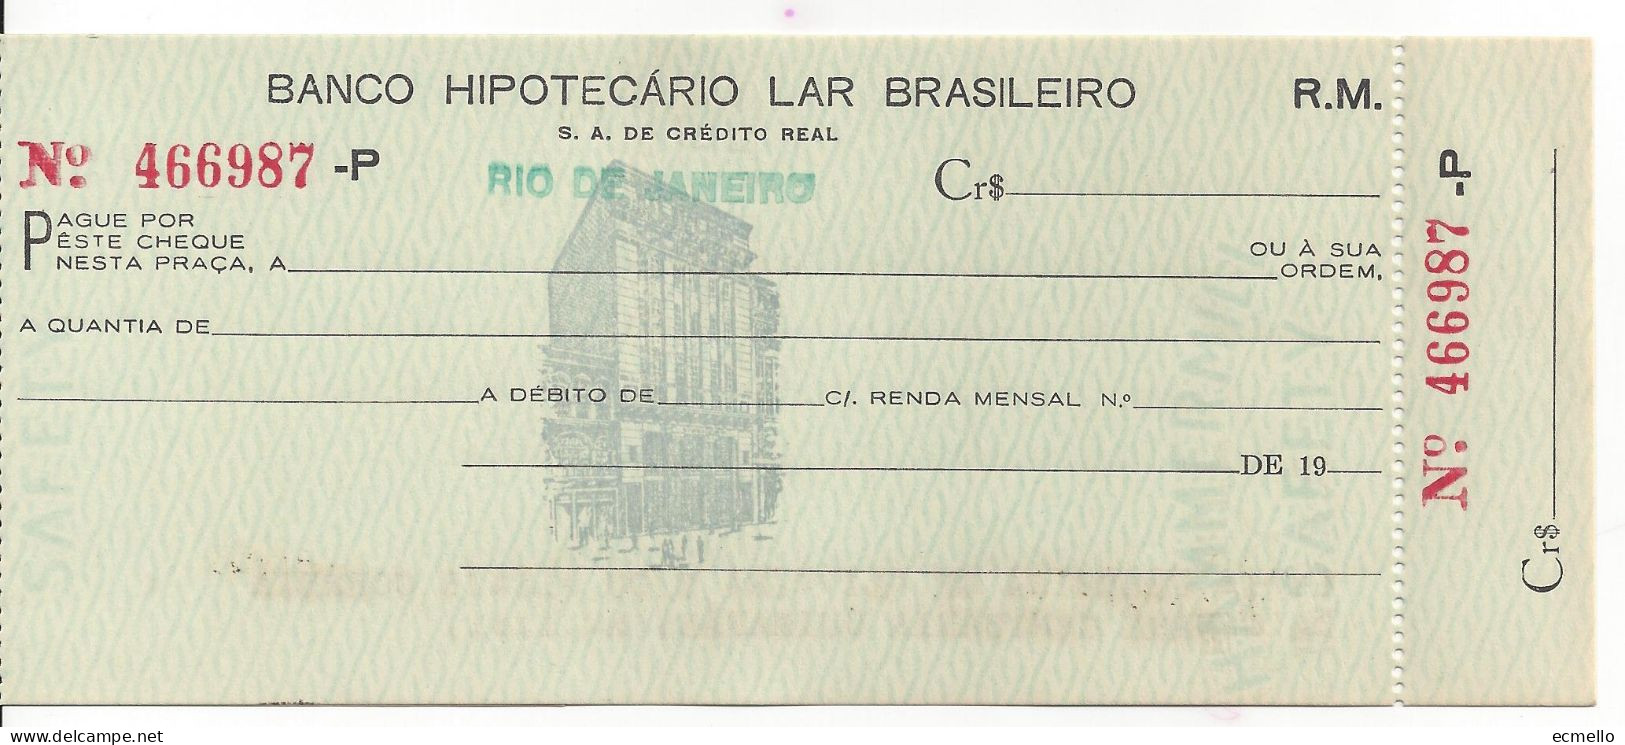 BRAZIL CHEQUE CHECK BANCO HIPOTECARIO LAR BRASILEIRO, RIO, 1950'S BUILDING VIGNETTE VD - Cheques En Traveller's Cheques